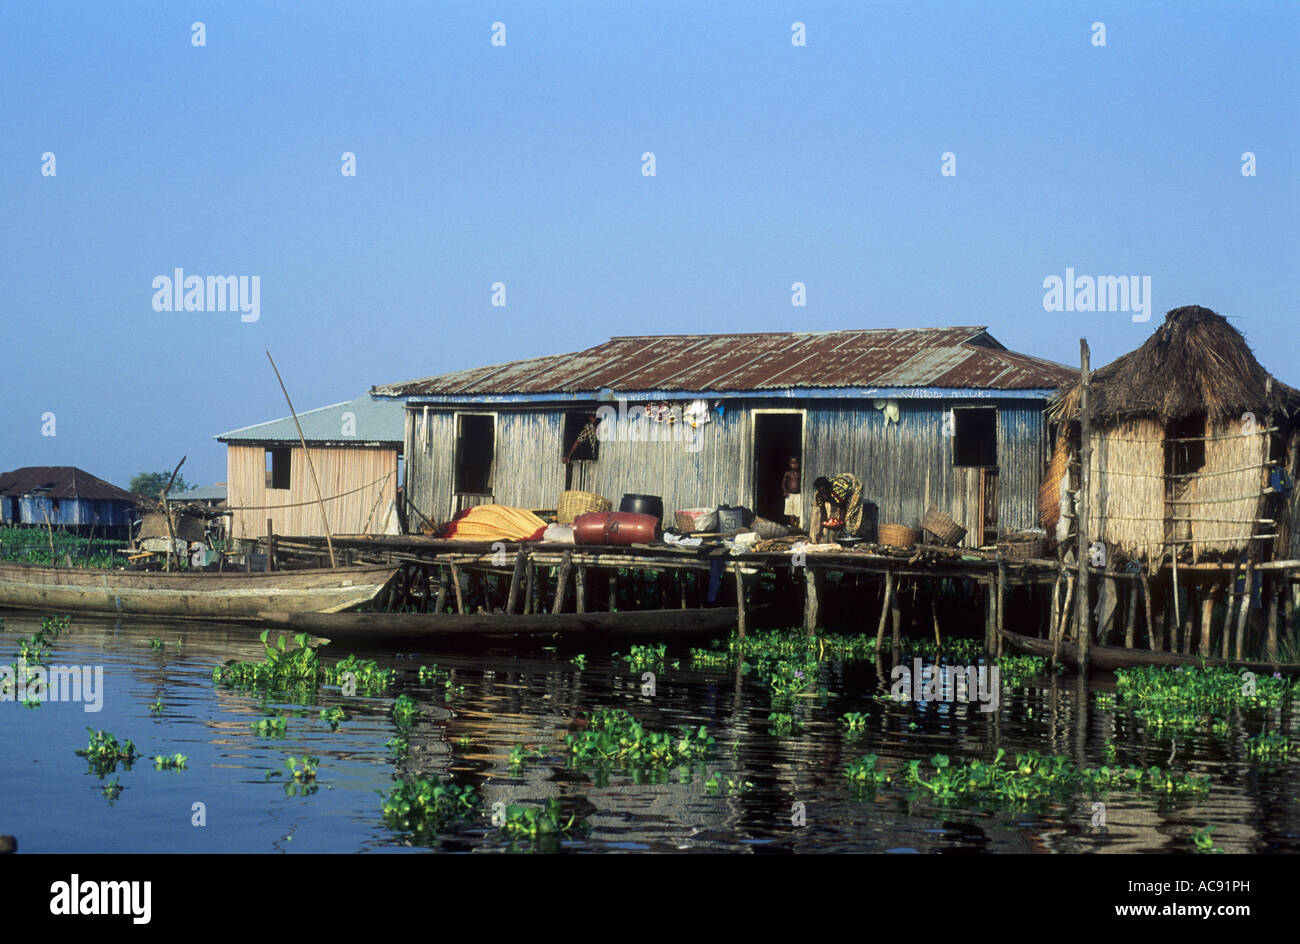 Houses on stilts in Ganvie; Benin Stock Photo